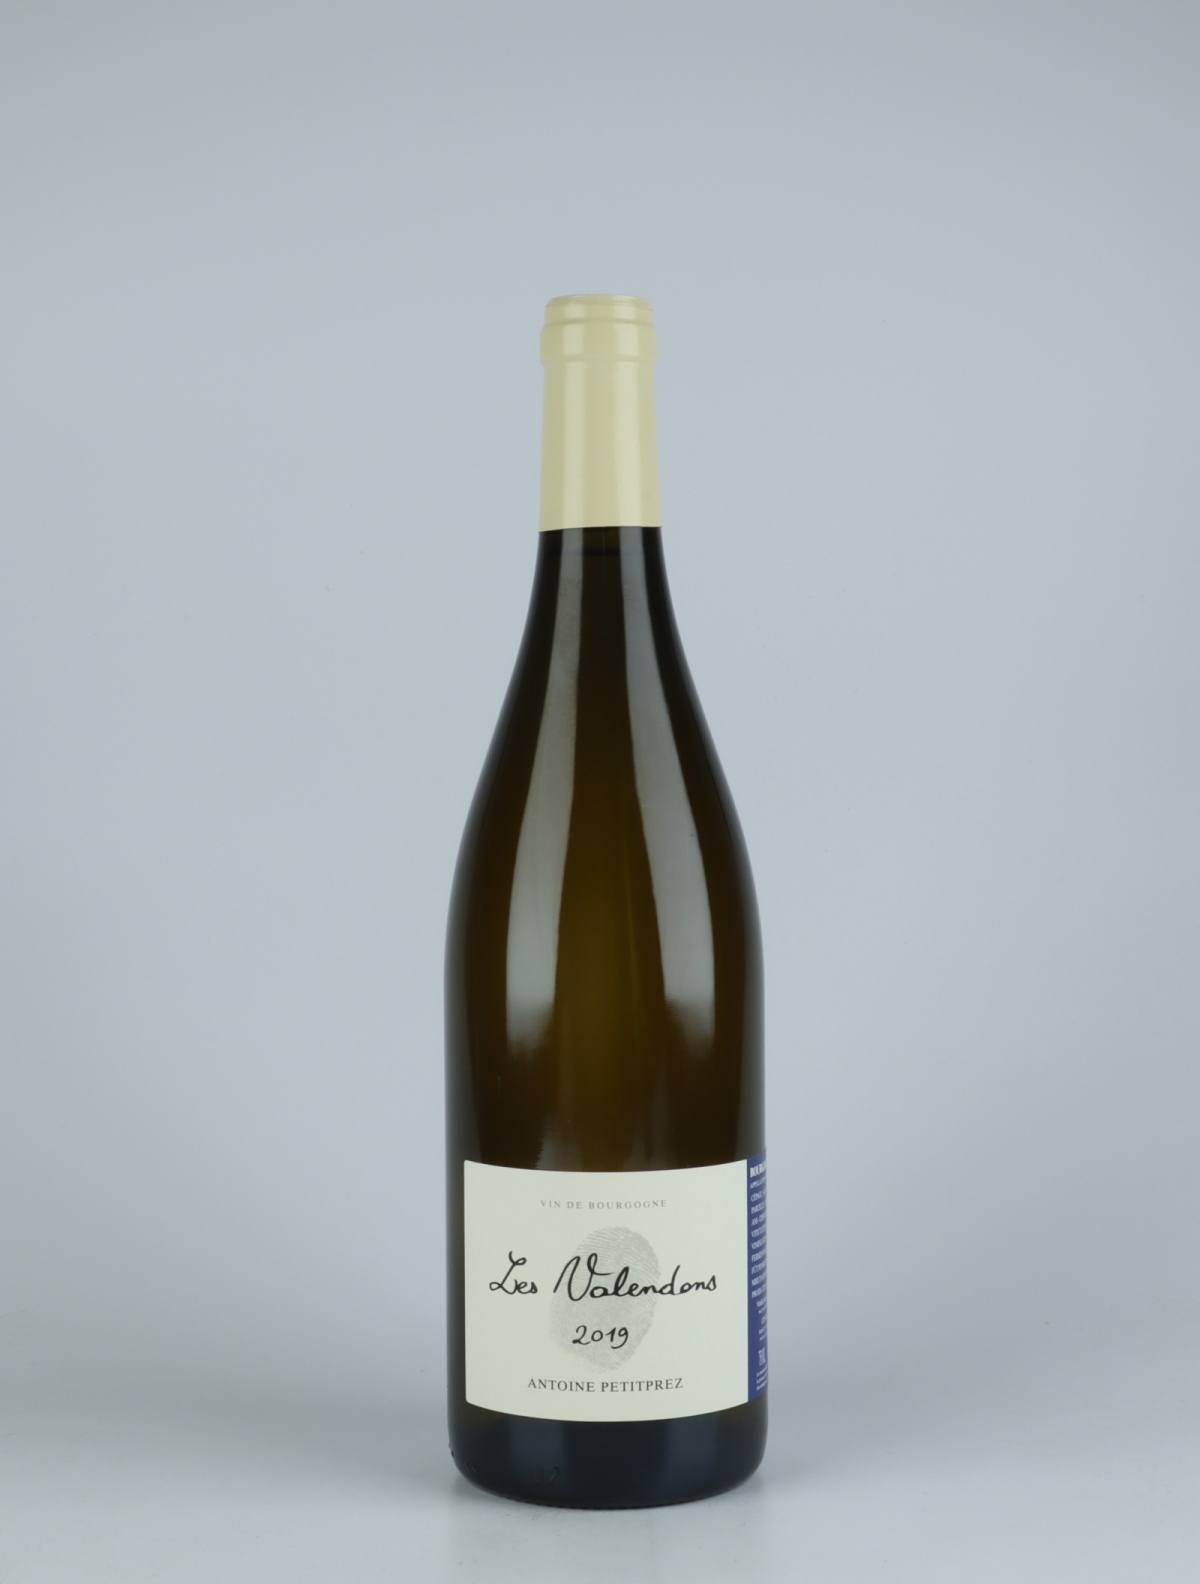 A bottle 2019 Bourgogne Aligoté - Les Valendons White wine from Antoine Petitprez, Burgundy in France